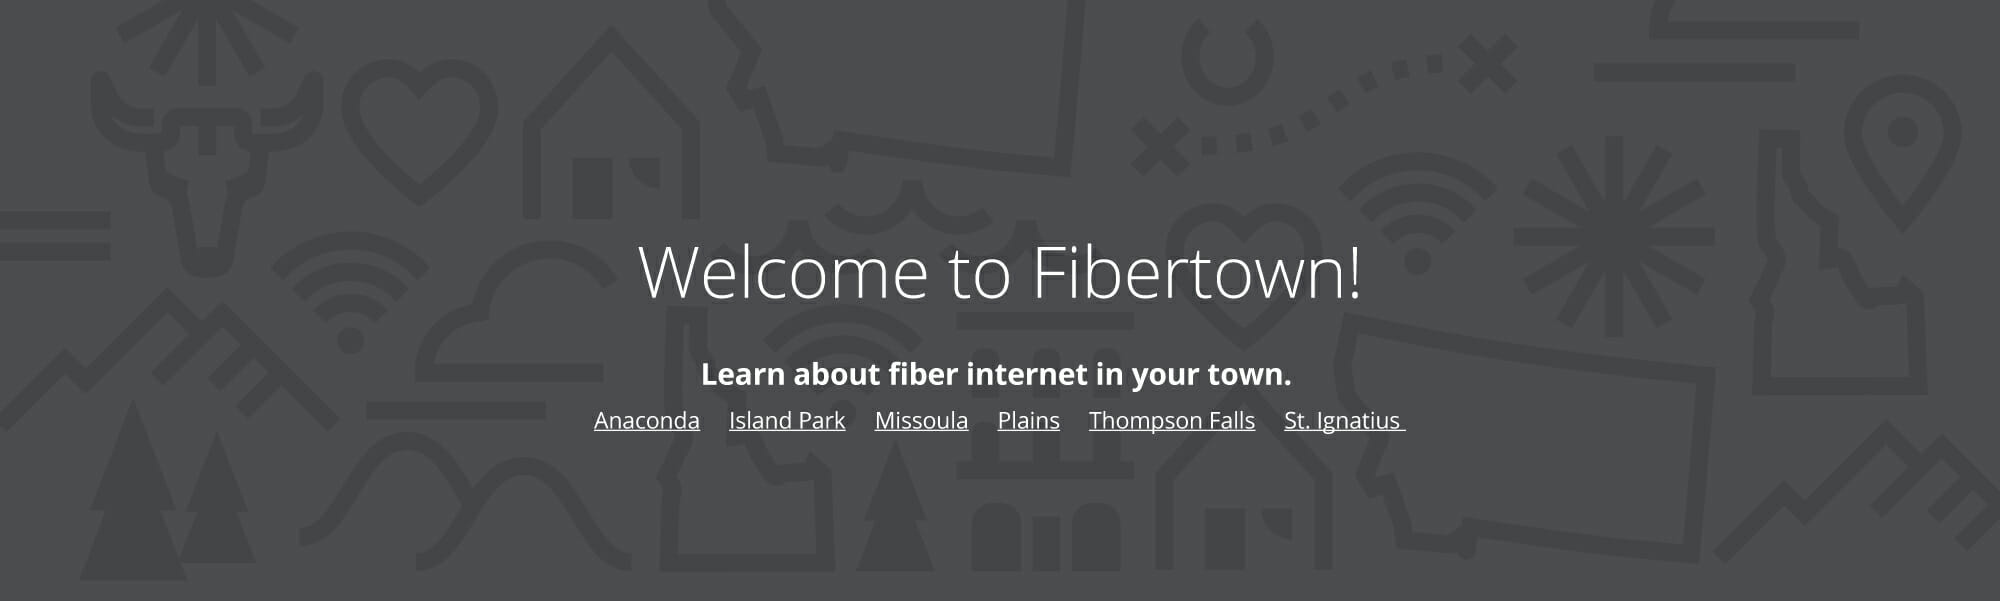 Do you live in Fibertown?